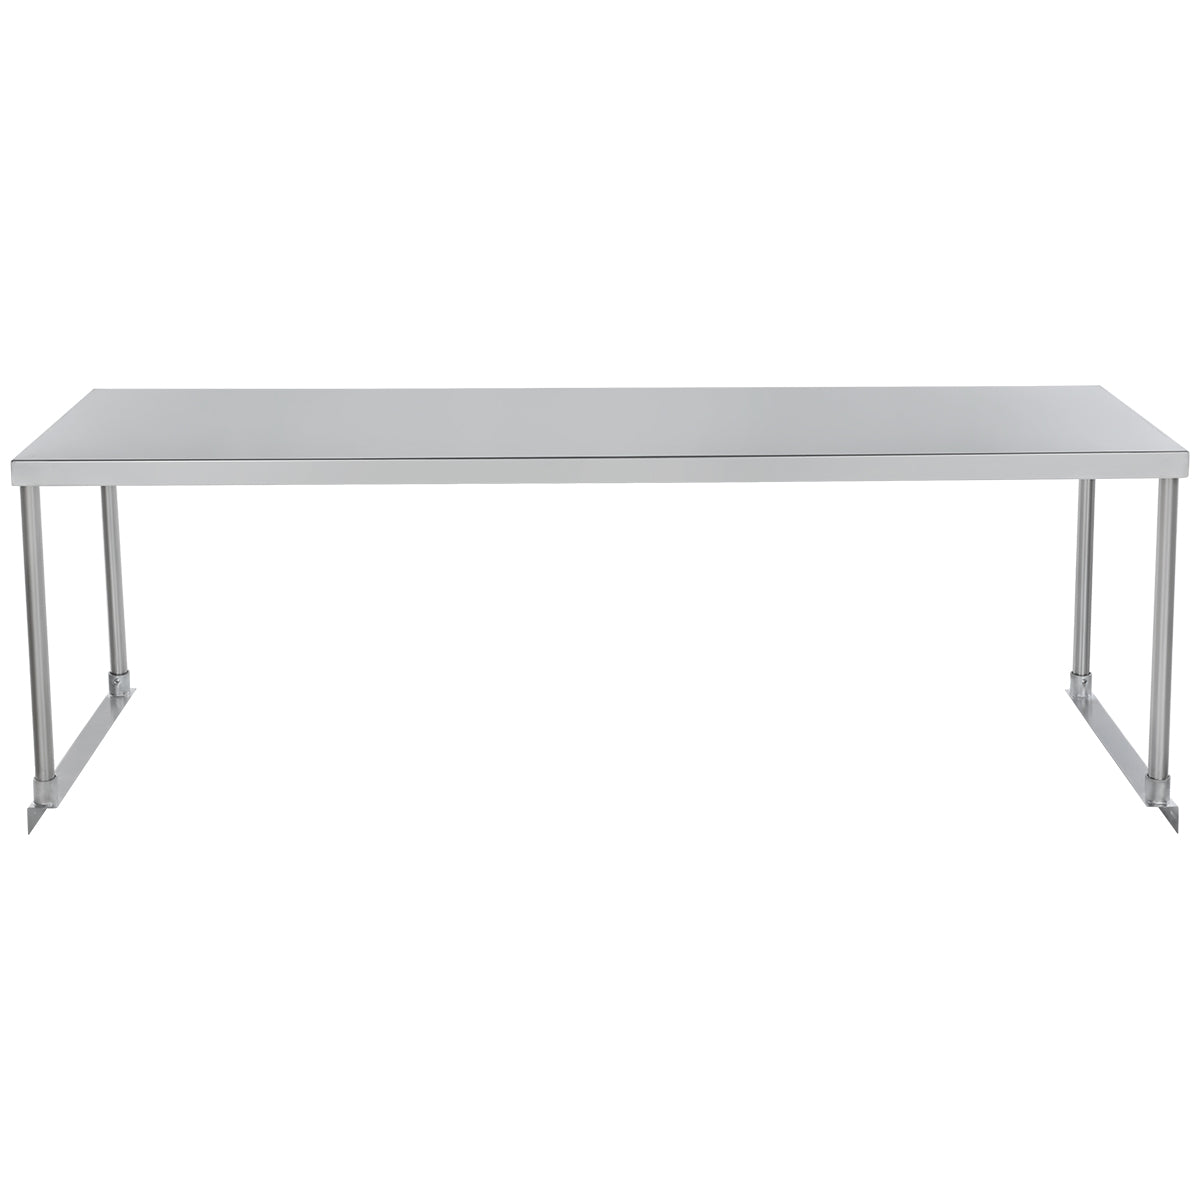 Empura ESOS1860 Overshelf Table-mounted Standard